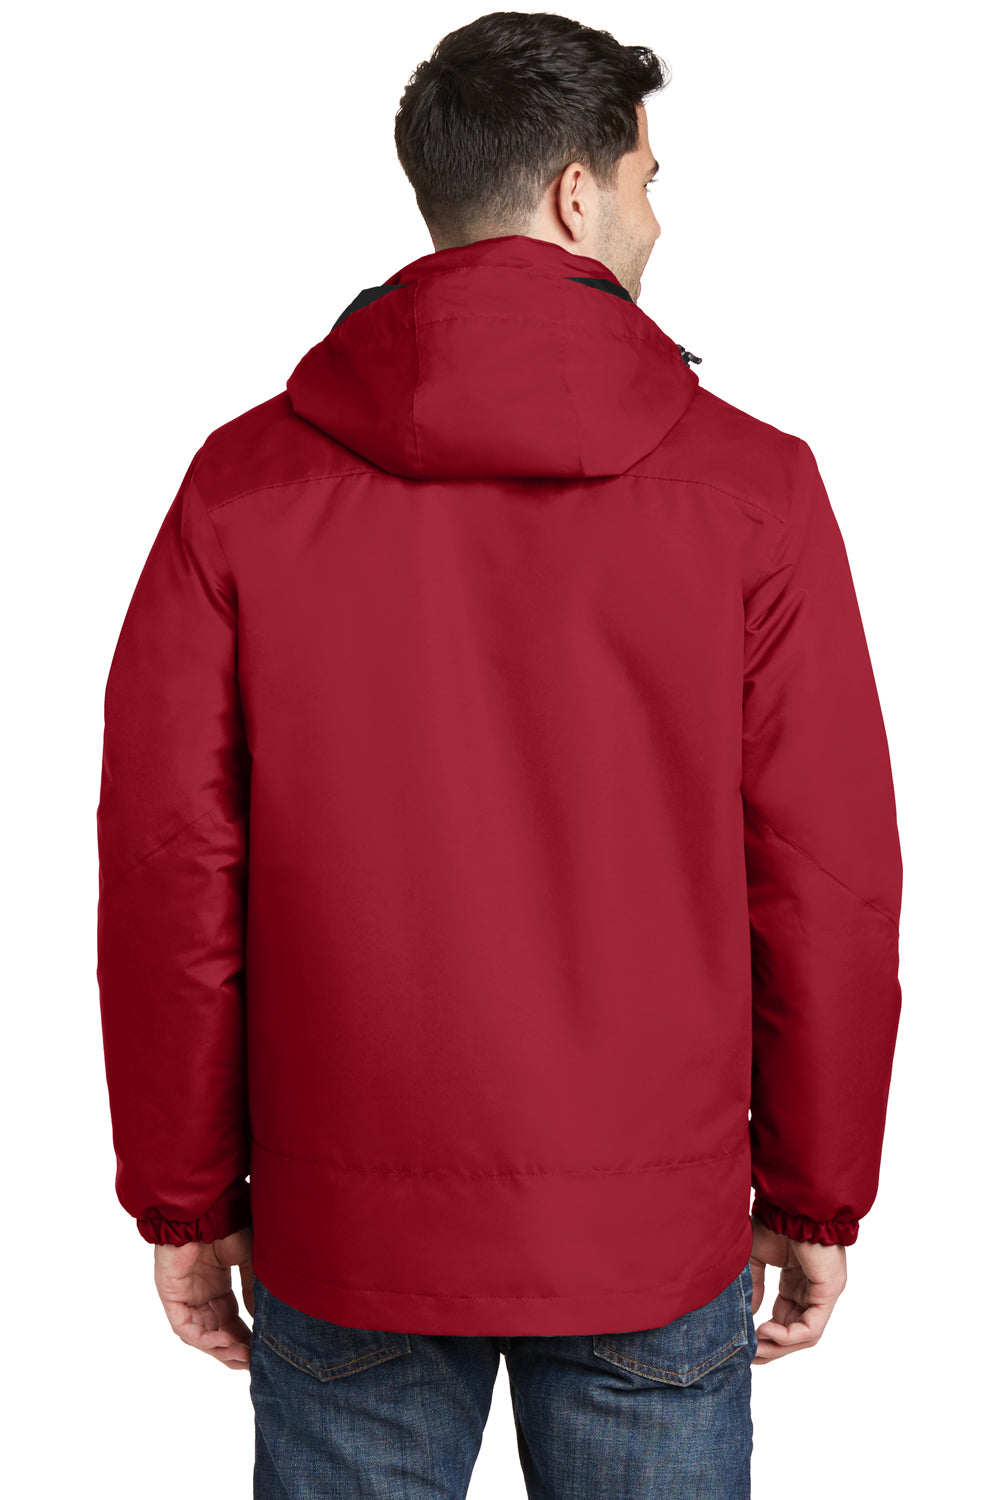 Port Authority J332 Mens Vortex 3-in-1 Waterproof Full Zip Hooded Jacket Red/Black Back